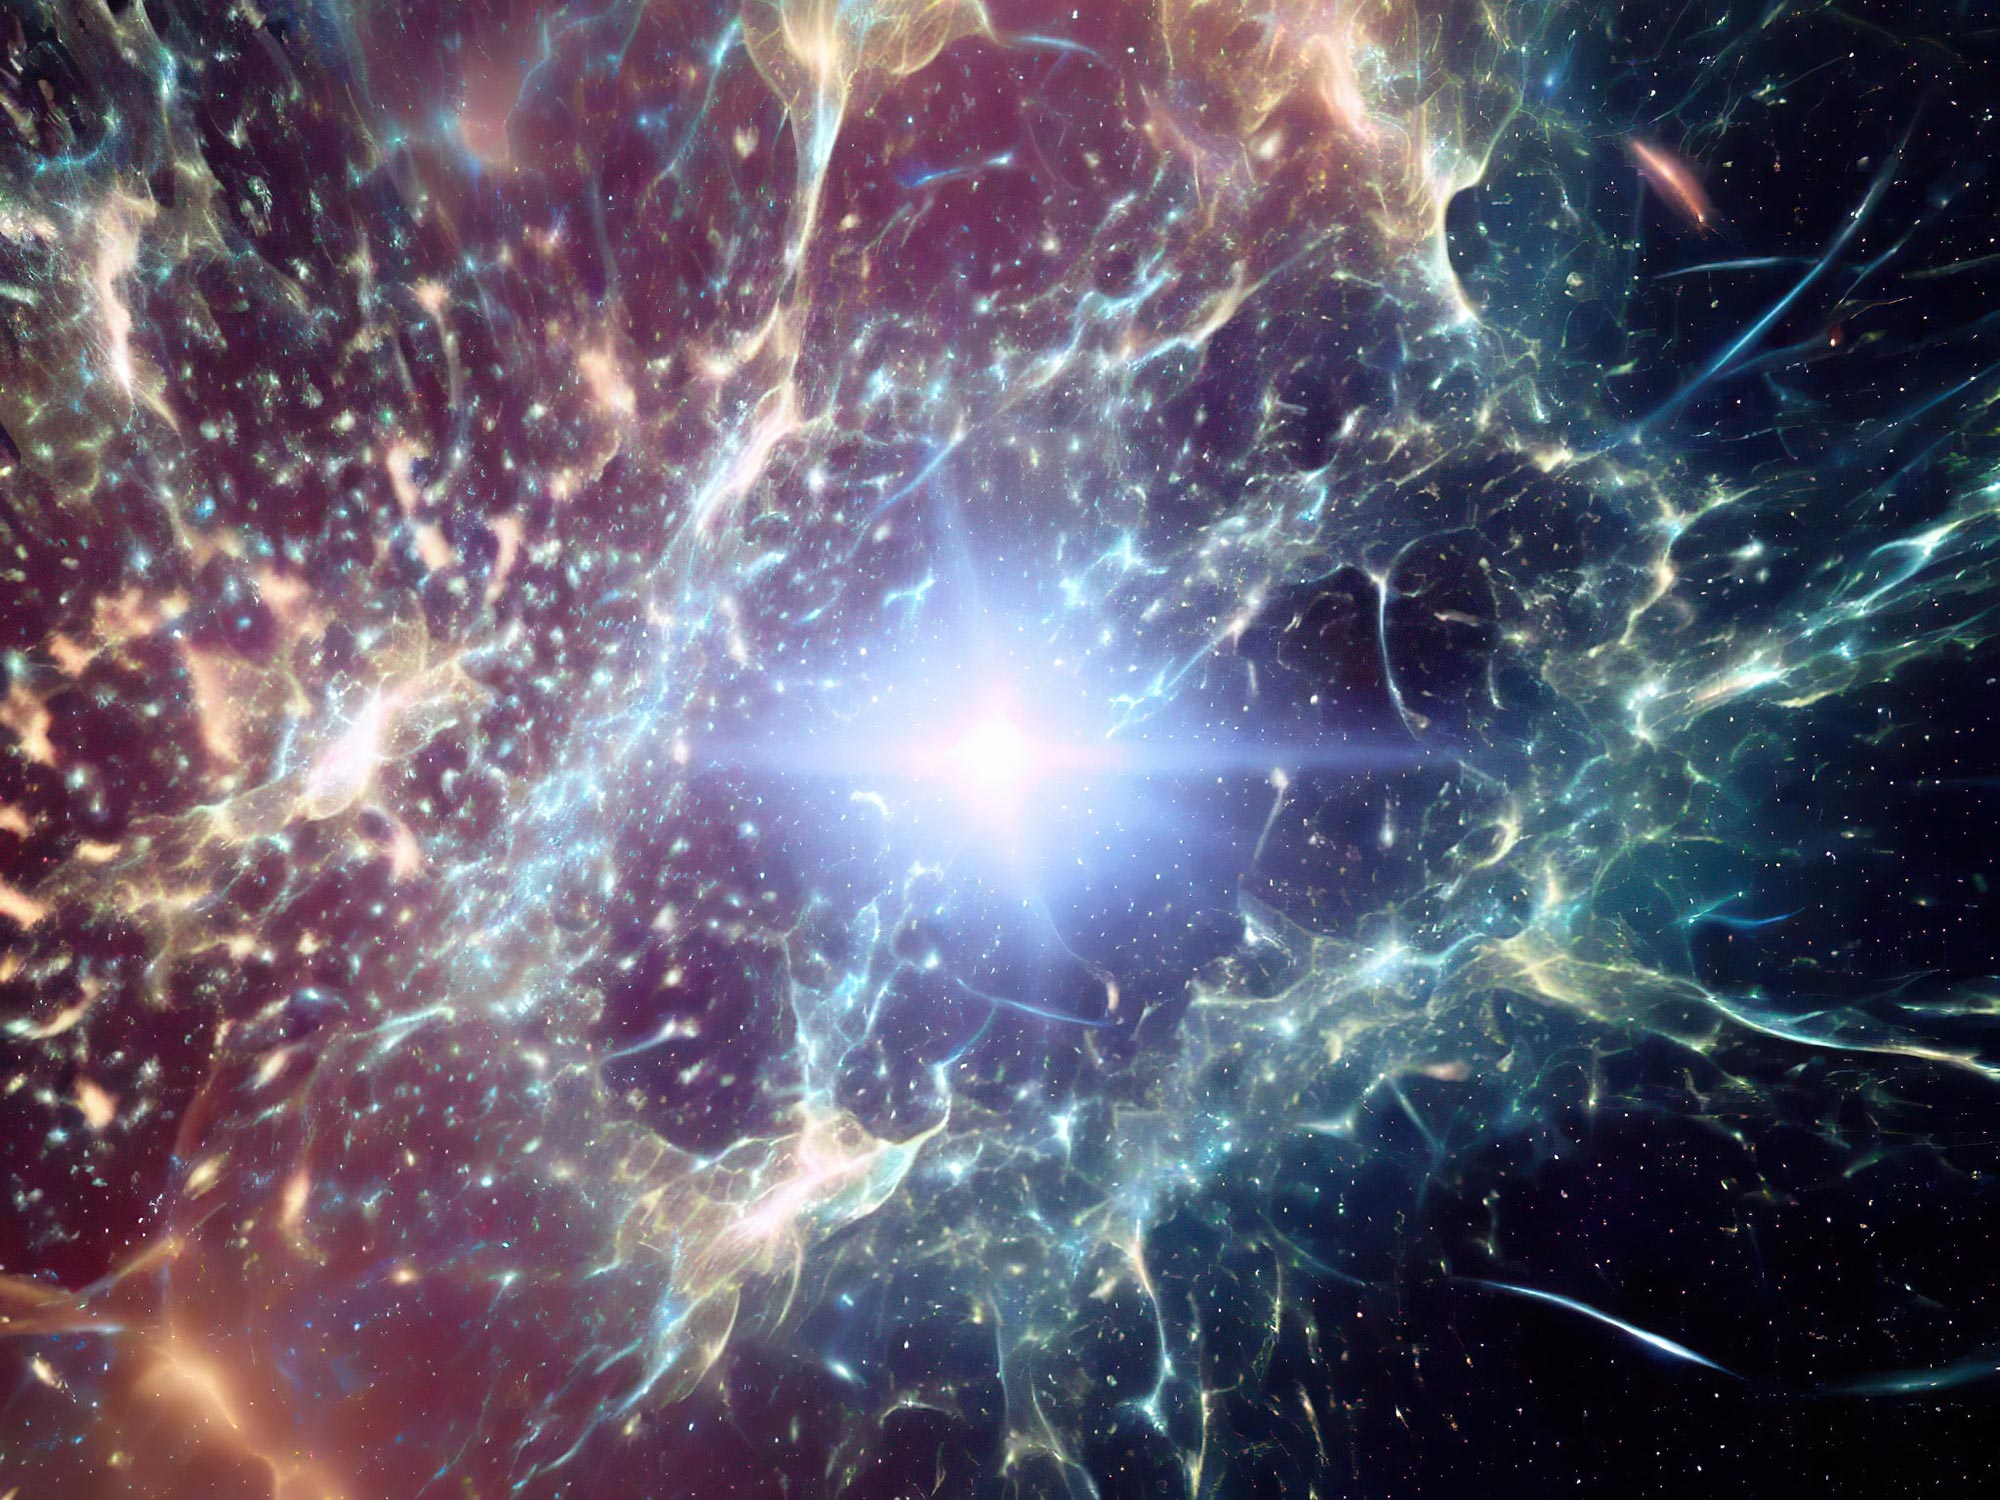 Telescopio espacial Webb muestra el universo primitivo agrietado con ráfagas de formación estelar